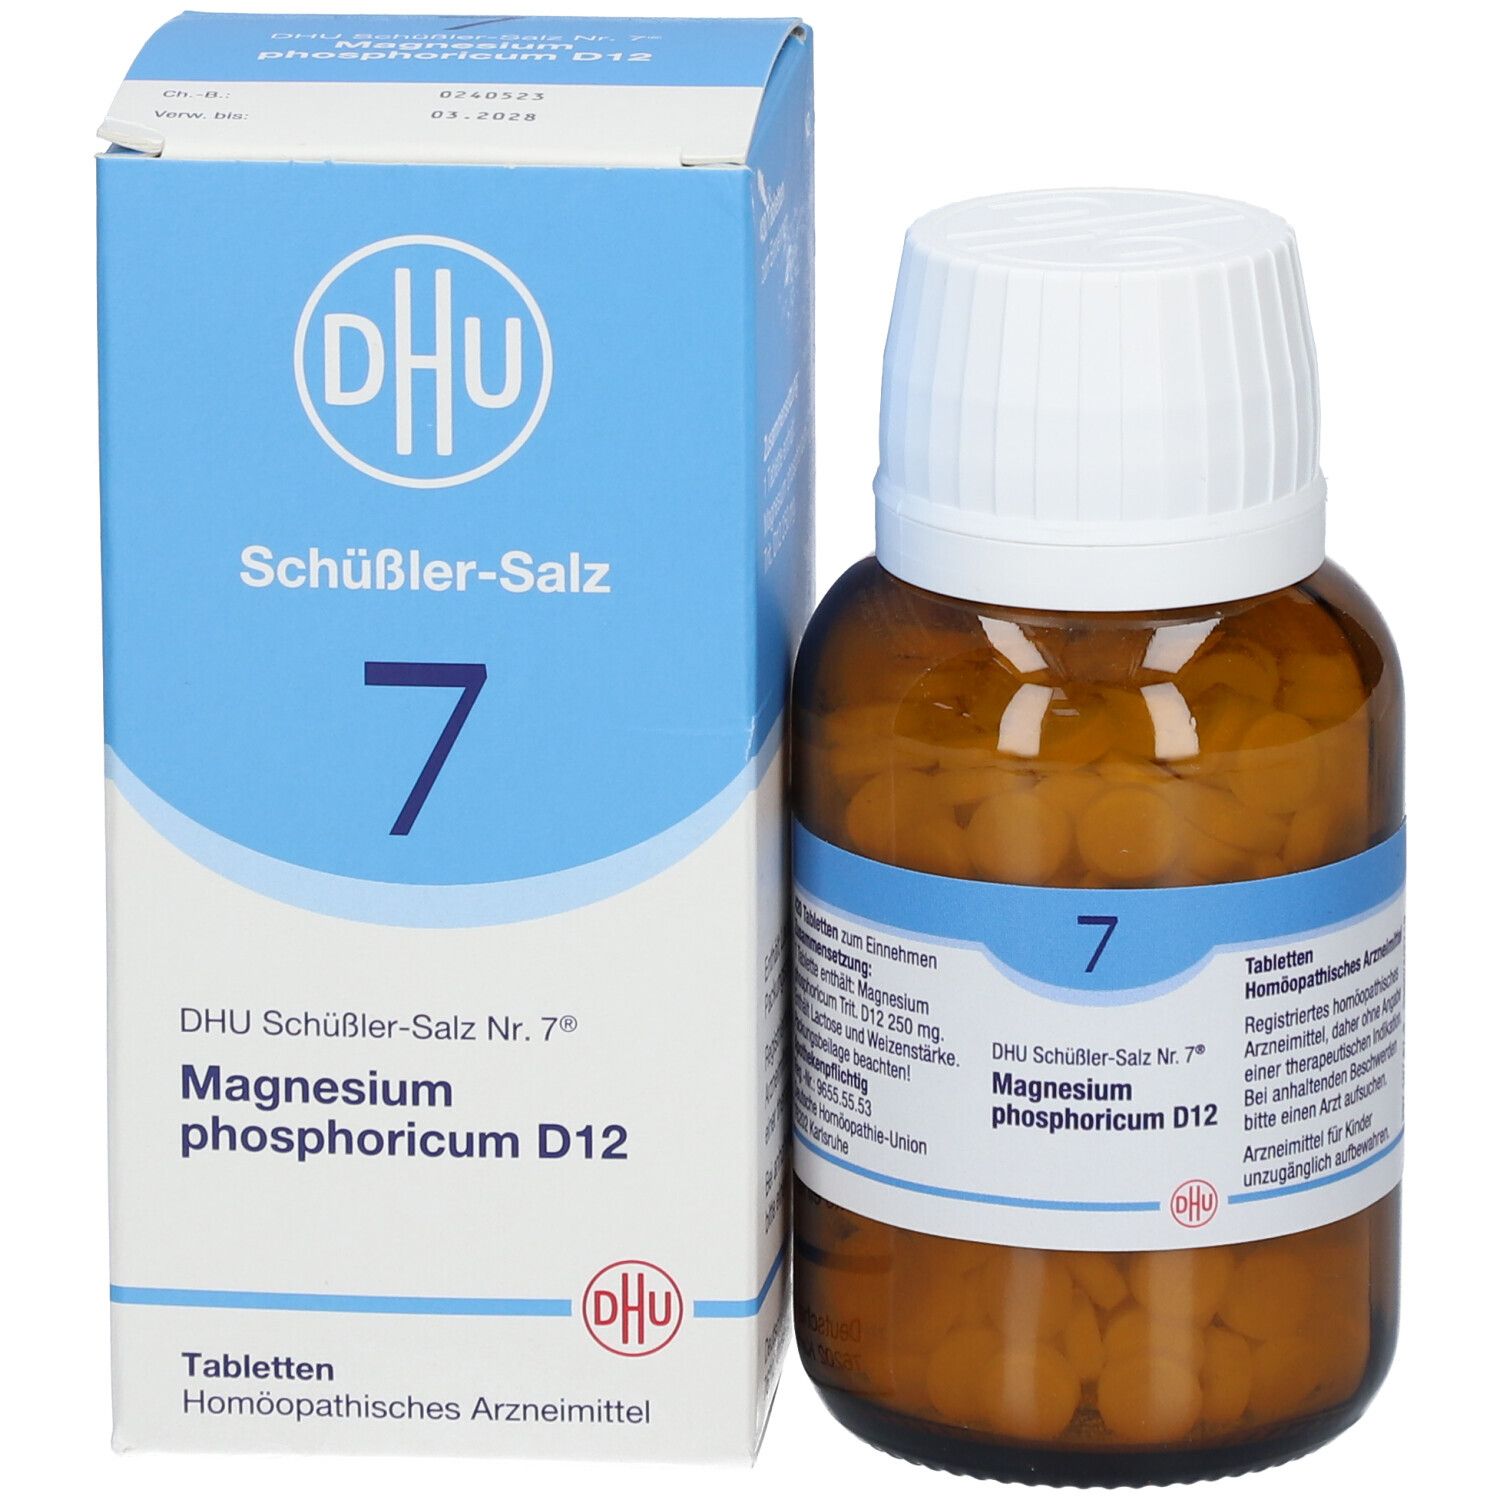 DHU Schüßler-Salz Nr. 7® Magnesium phosphoricum D12